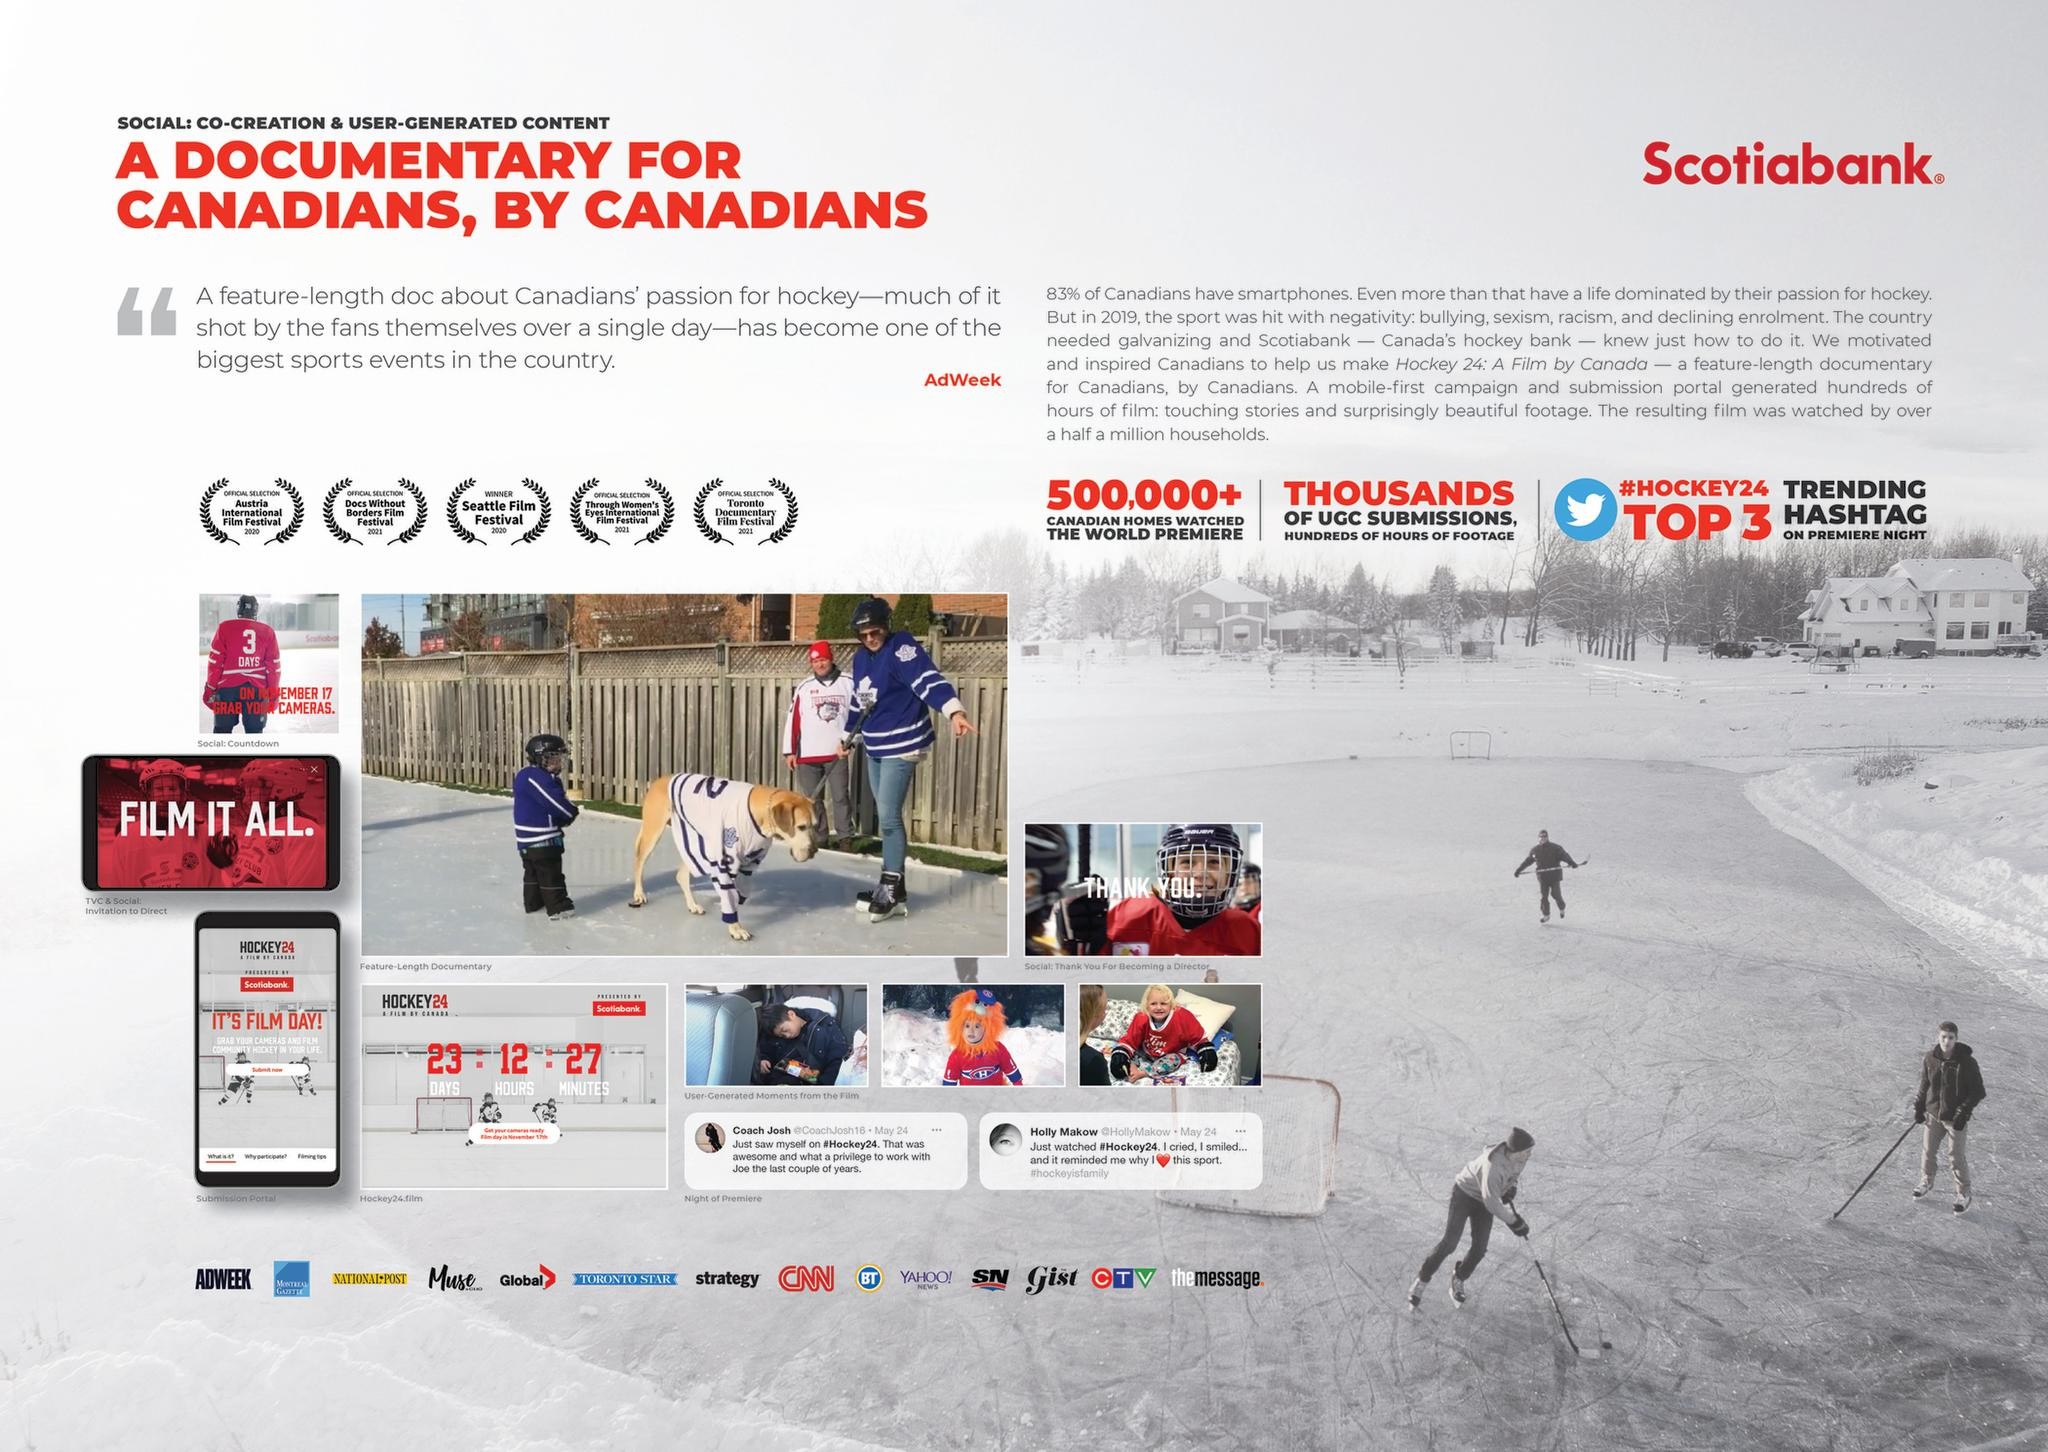 Hockey 24: A Film by Canada